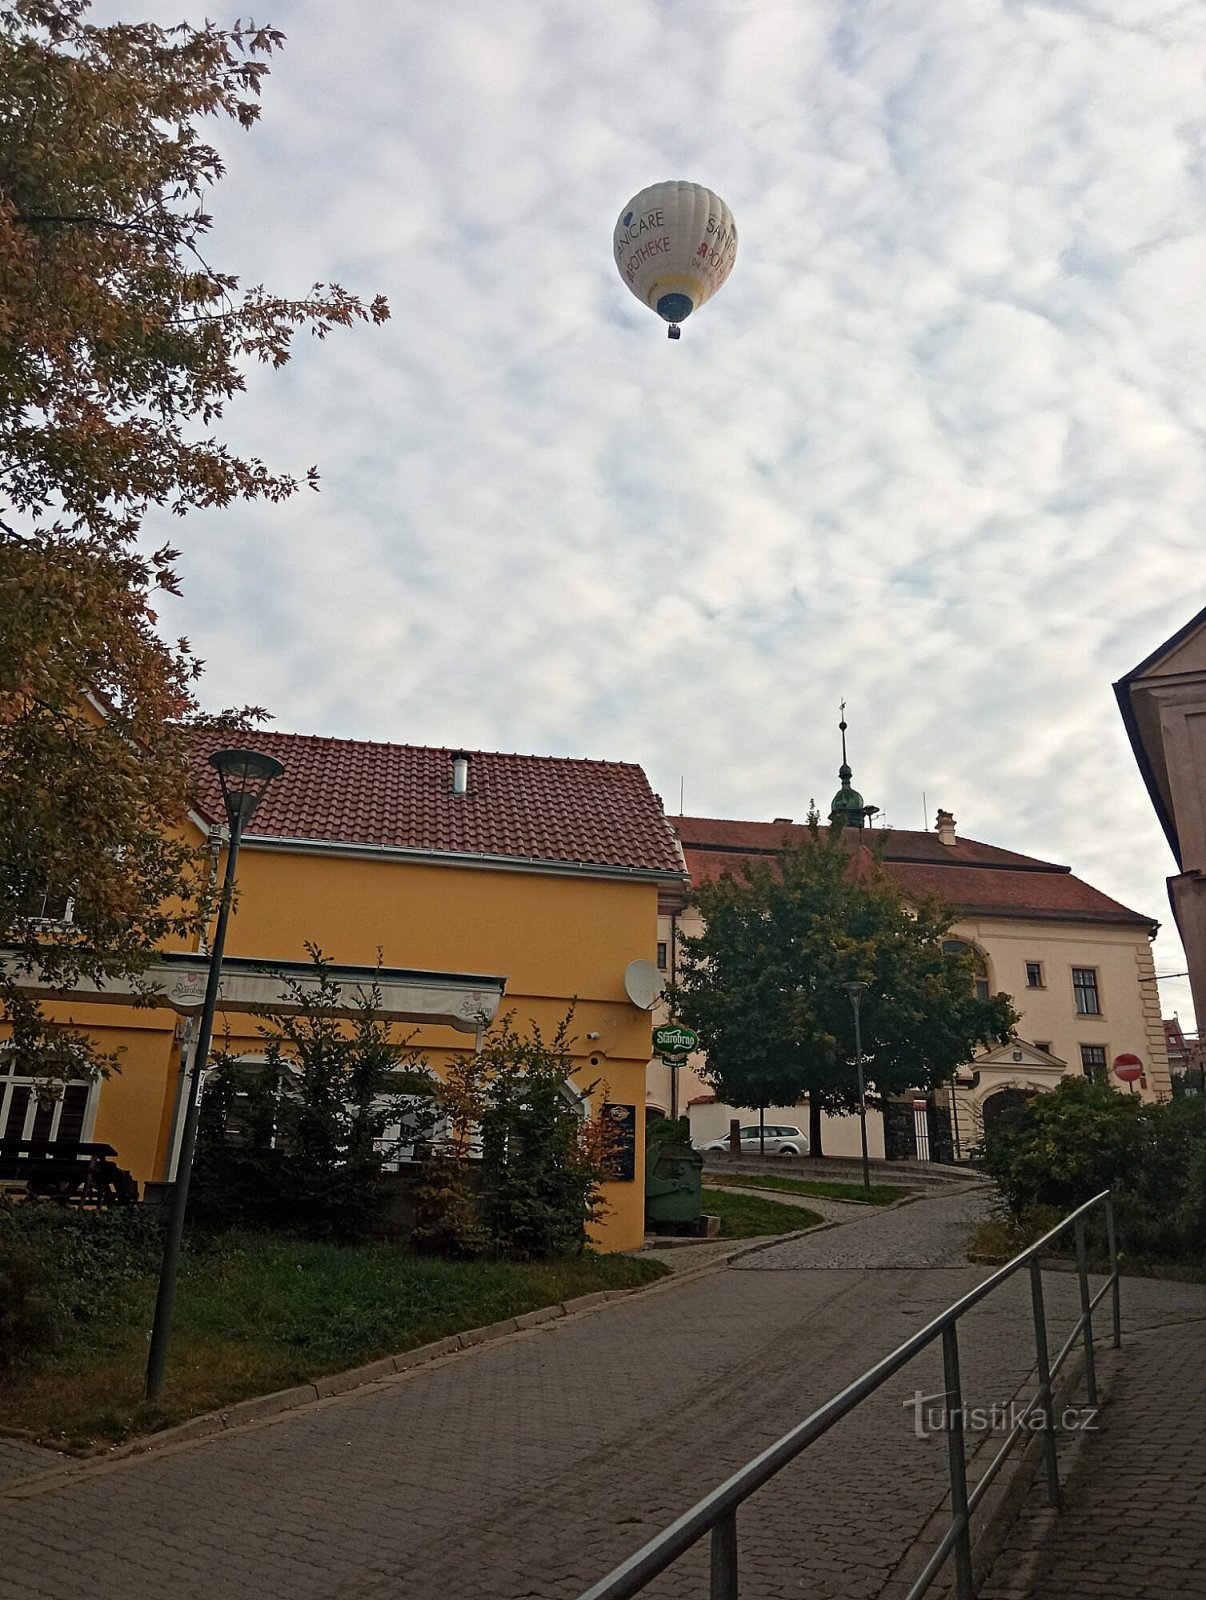 balloon over Tišnov